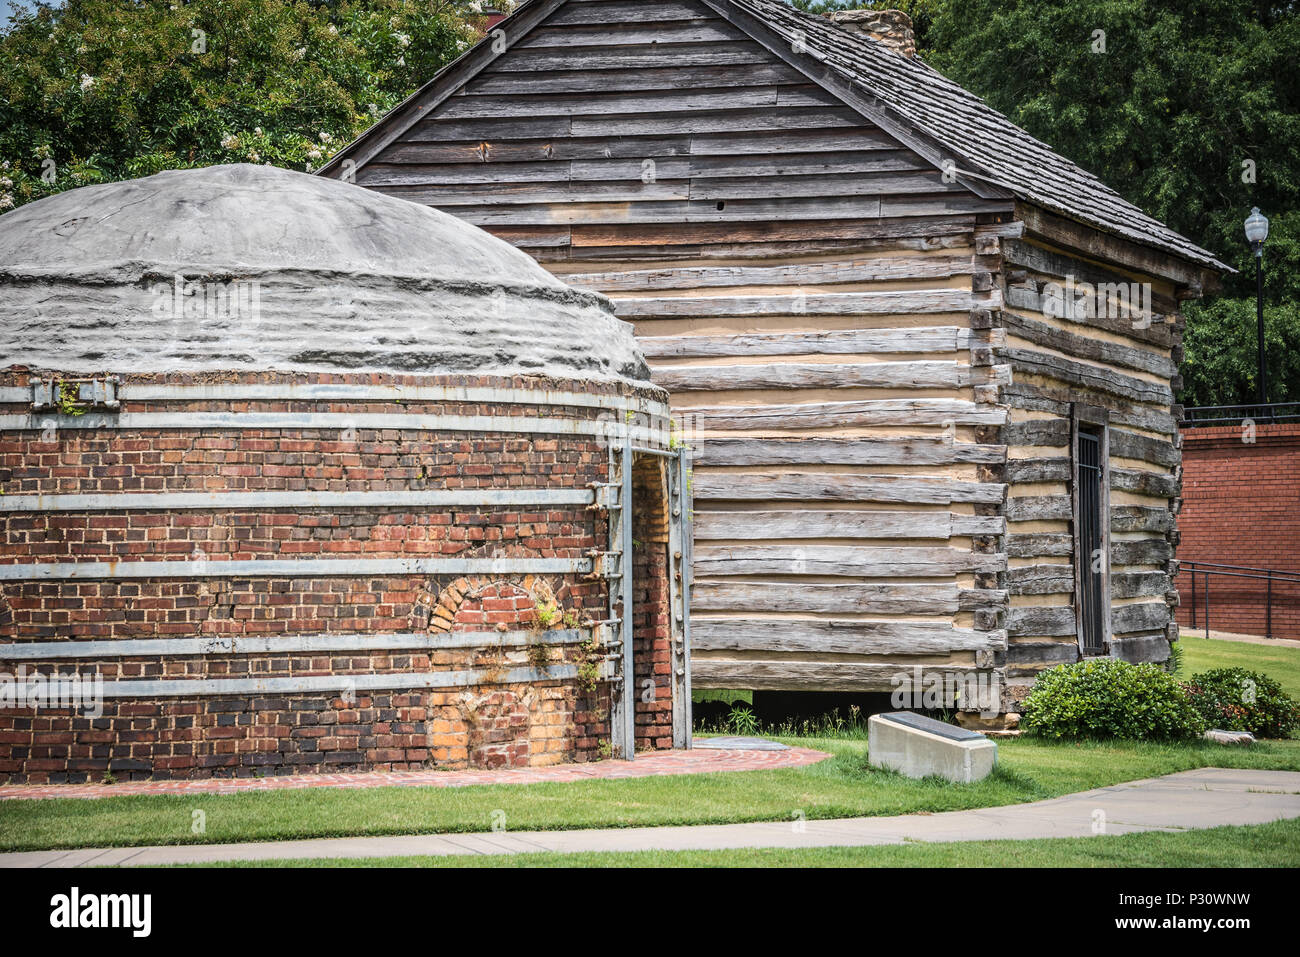 Preserved brick kiln at Heritage Park in Columbus, Georgia. (USA) Stock Photo